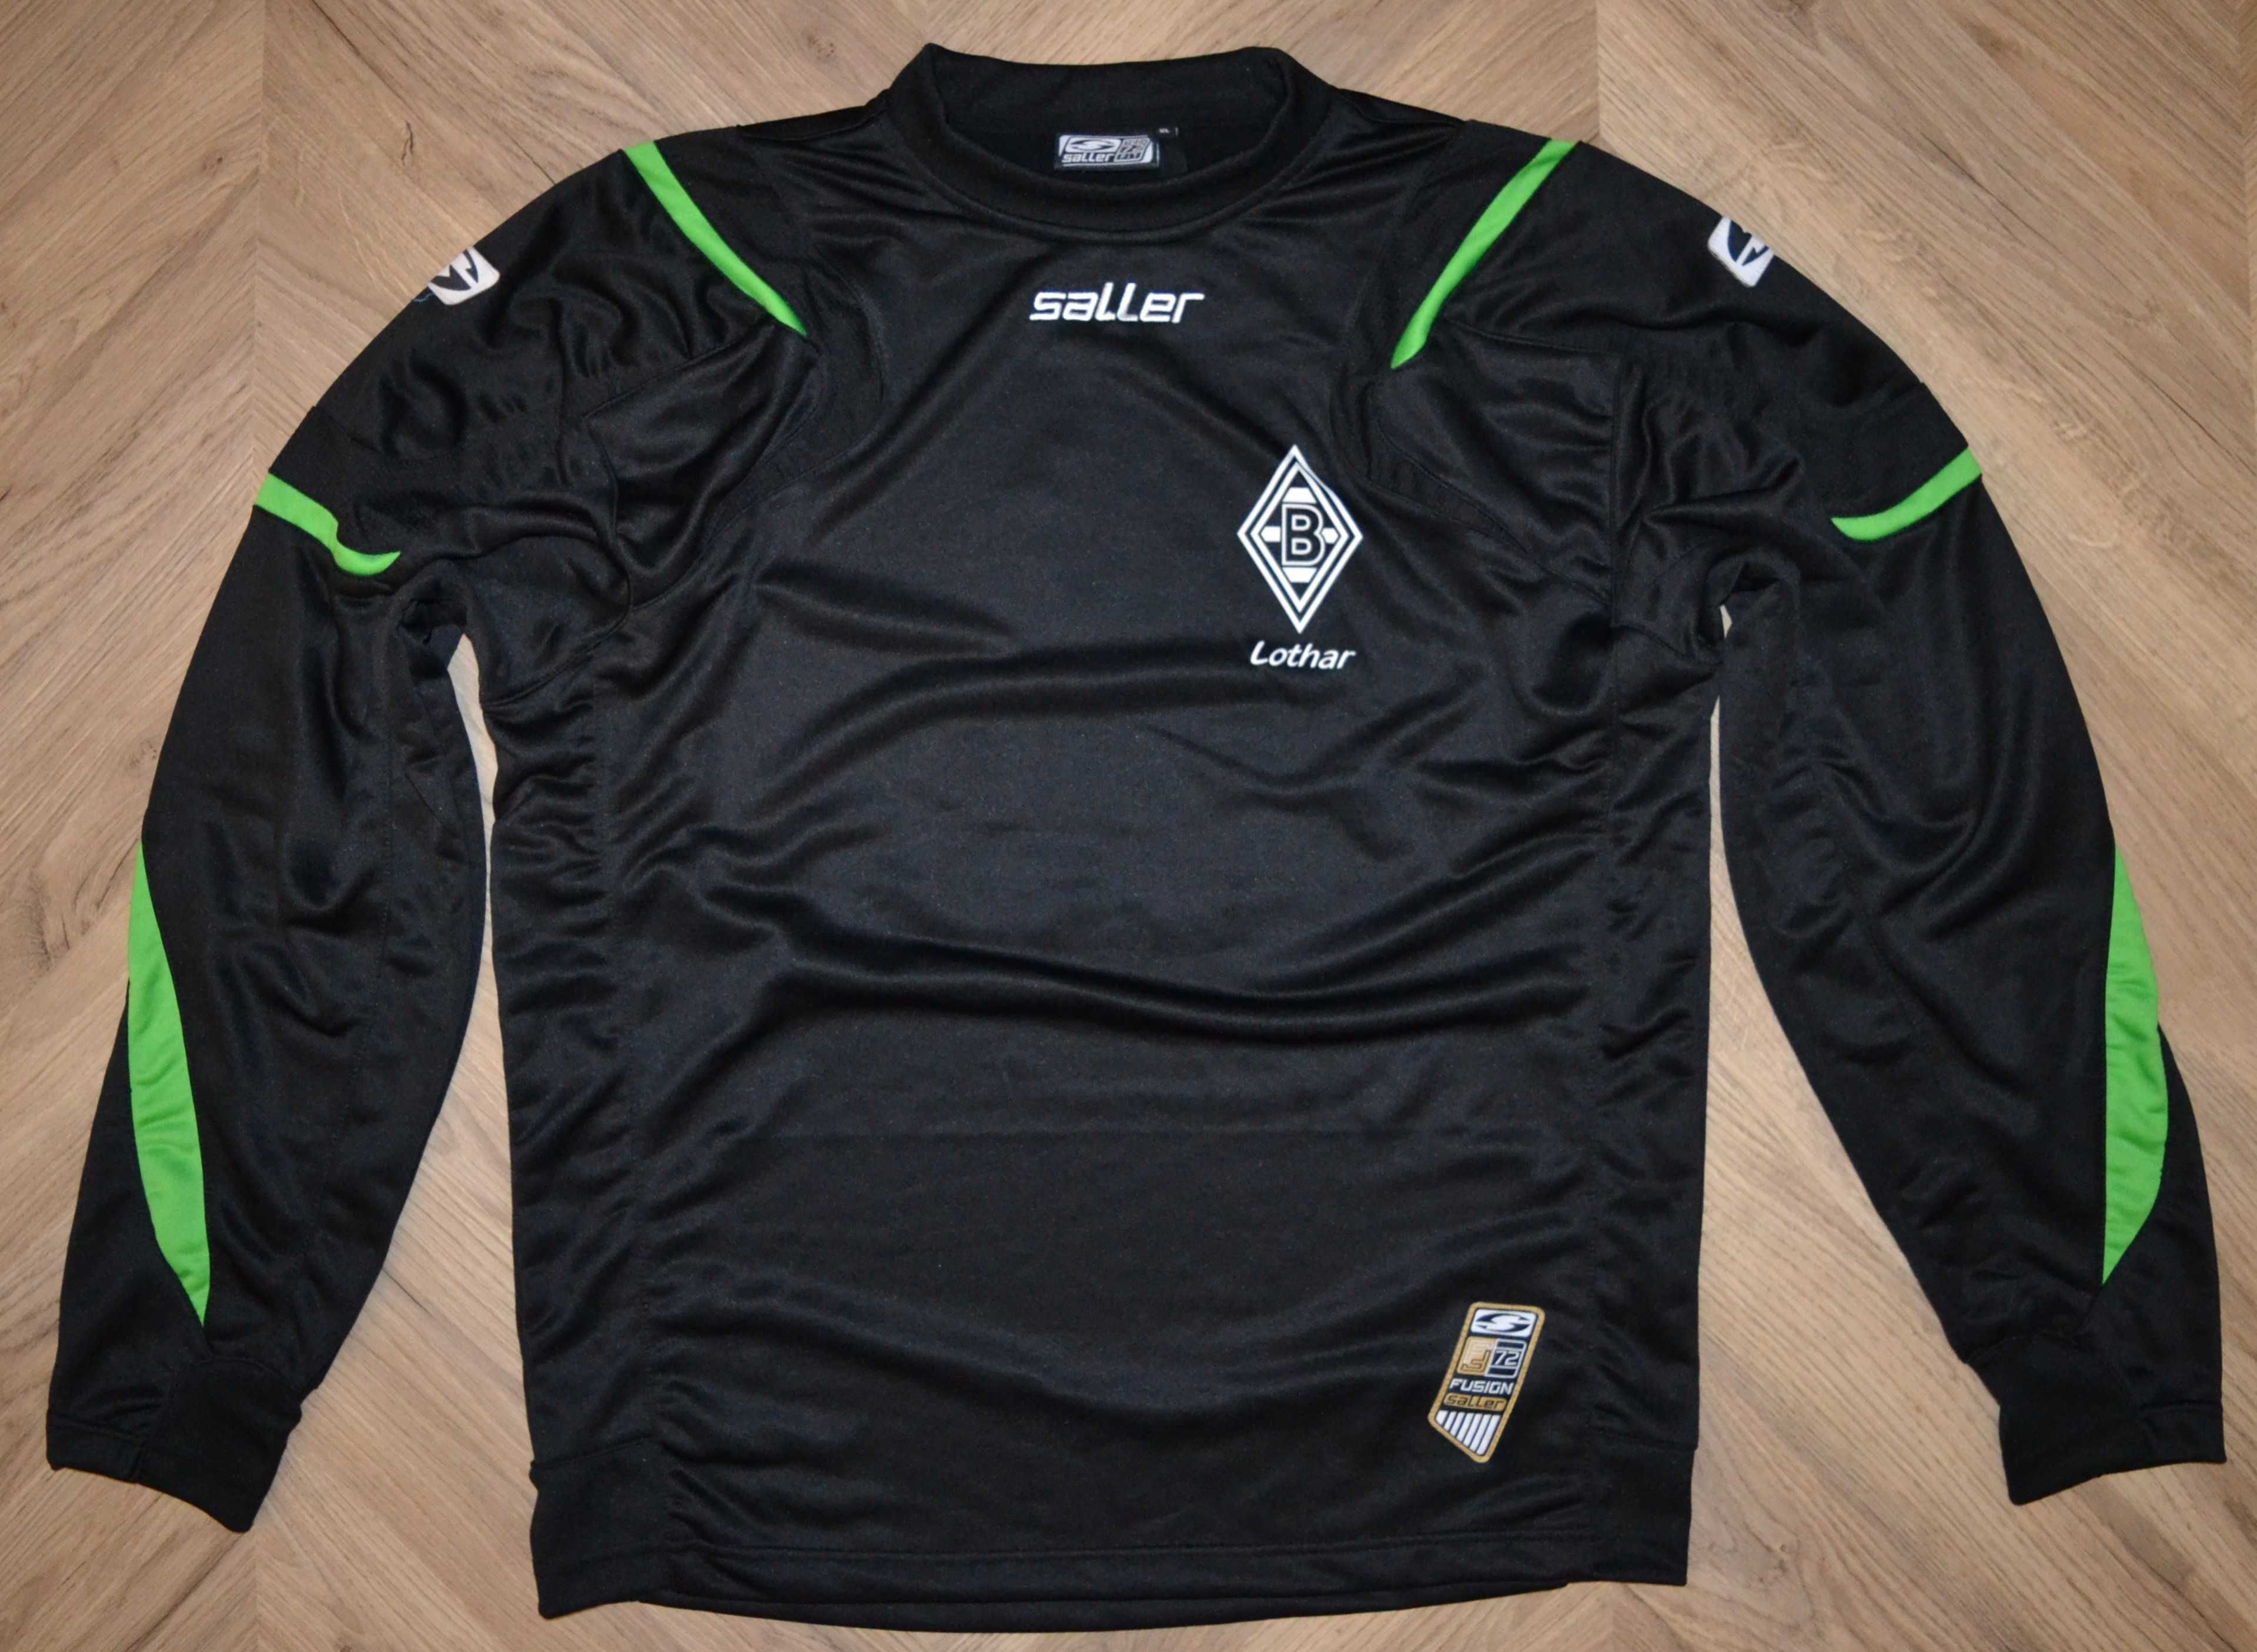 Saller _ czarna bluza fanklub _ Borussia Mönchengladbach _ XL